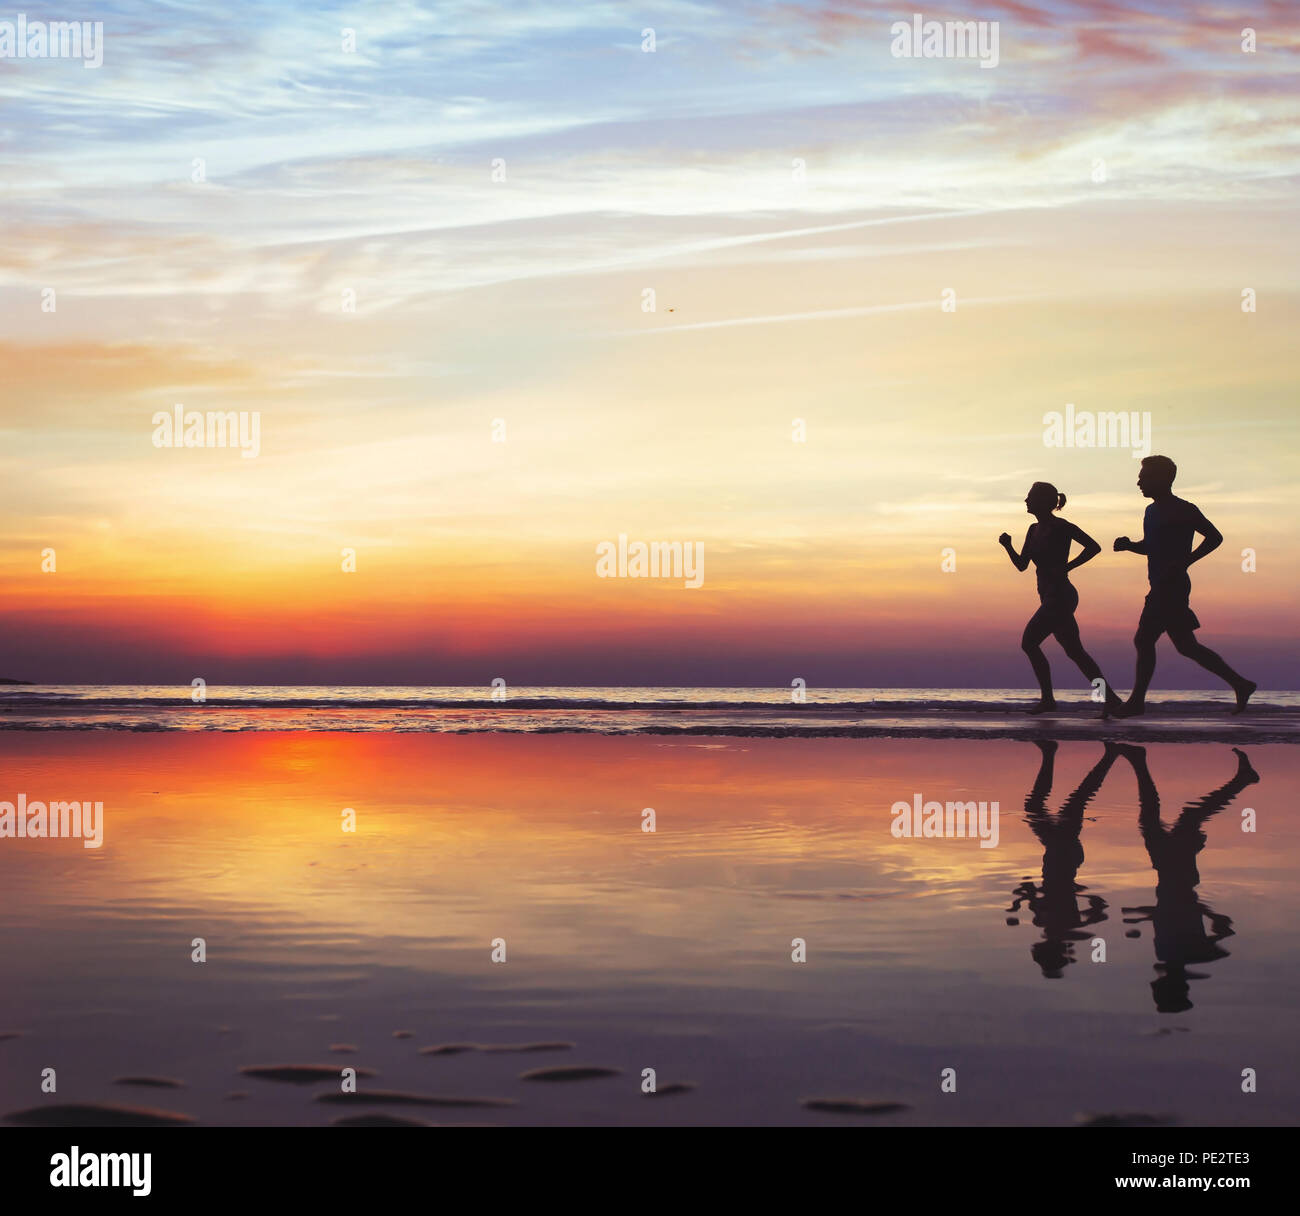 Le sport et la santé, deux coureurs sur la plage, silhouette de personnes courir au coucher du soleil, l'homme et de la femme de vie sain Banque D'Images